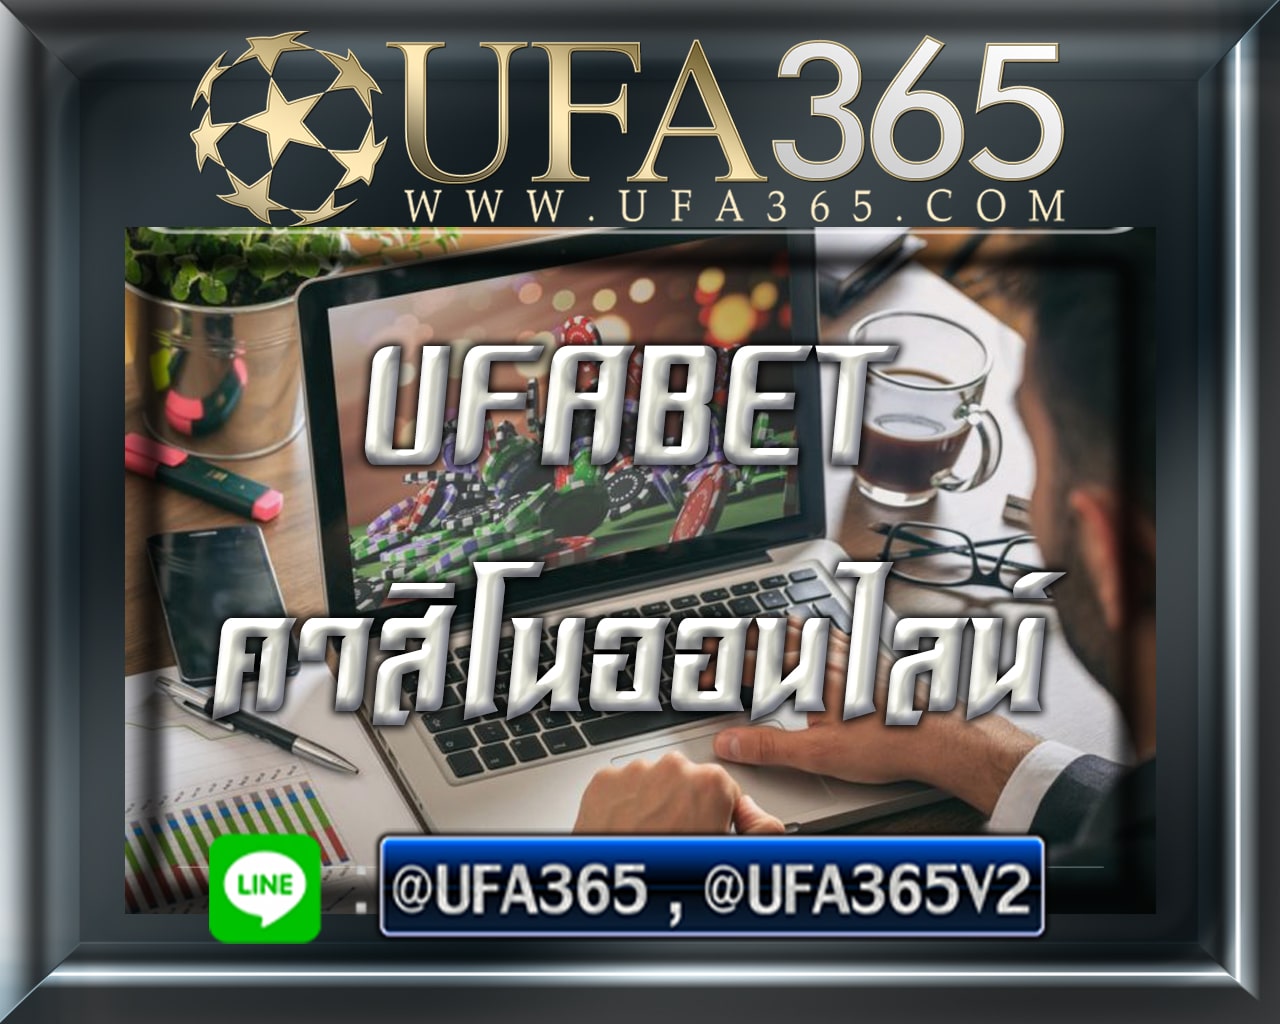 UFABET365